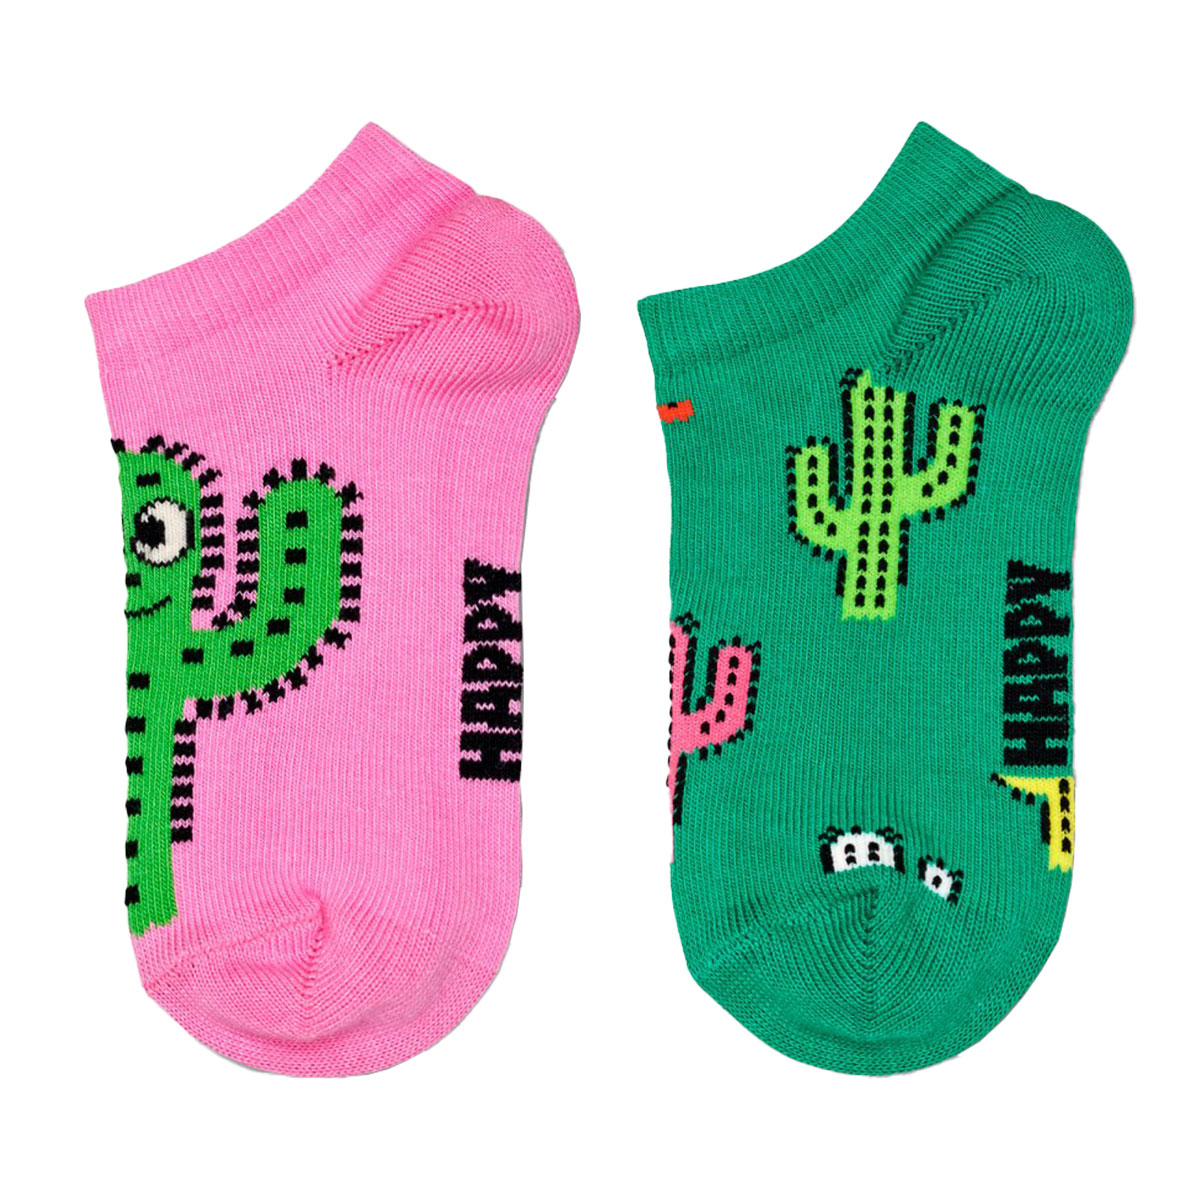 【2足セット】【24SS】Happy Socks ハッピーソックス Kids Cactus ( カクタス ) サボテン柄 2-Pack Low Socks 2足組 子供 スニーカー丈 綿混 ソックス KIDS ジュニア キッズ